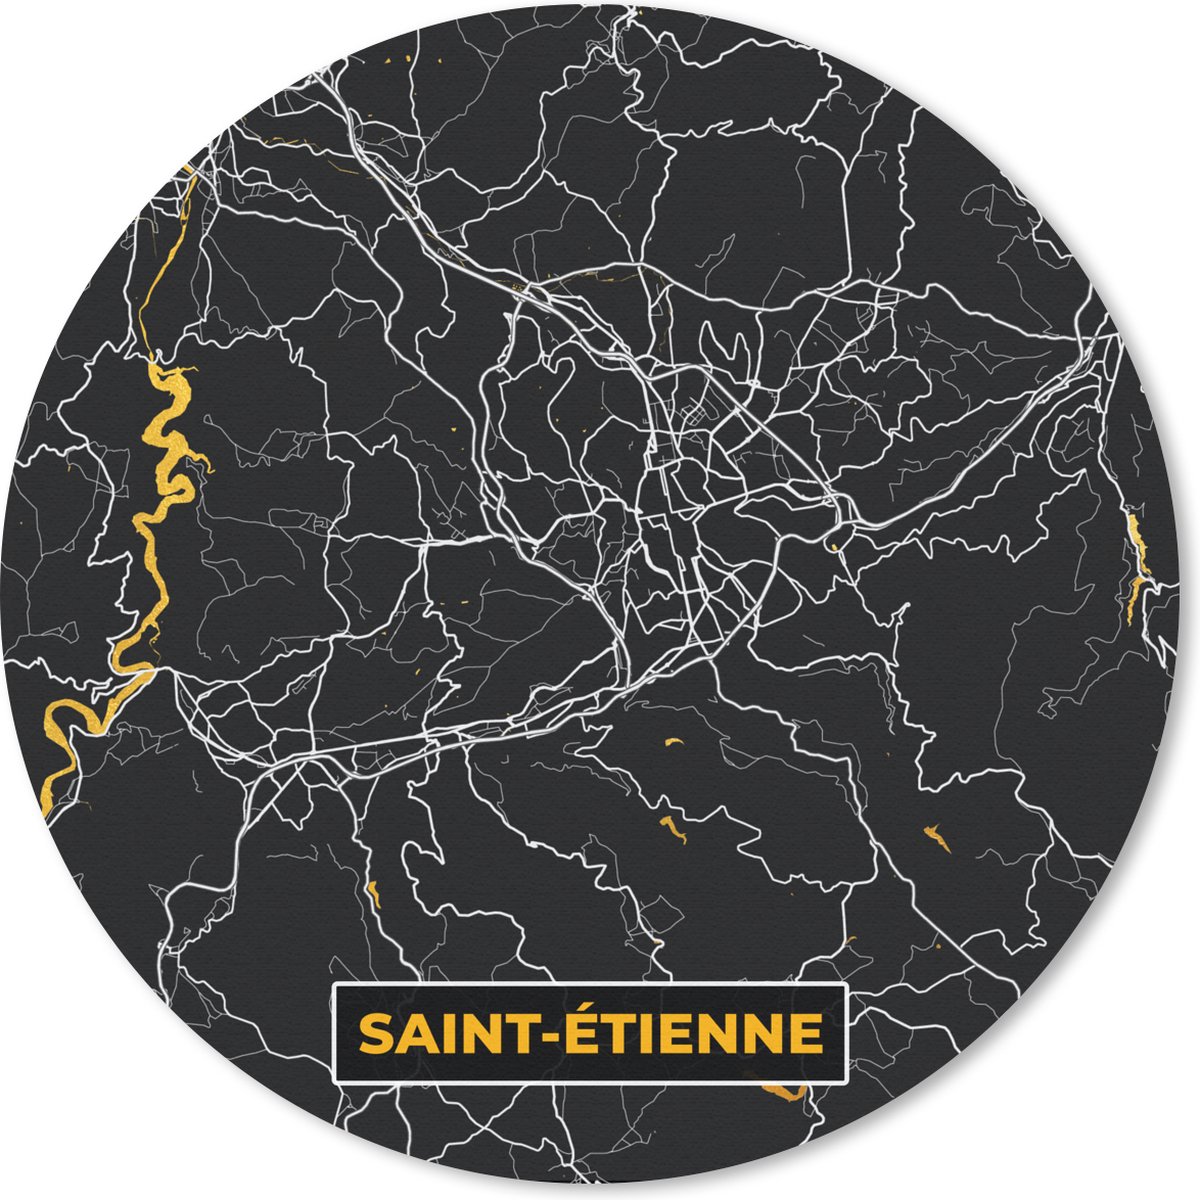 Muismat - Mousepad - Rond - Stadskaart - Plattegrond - Saint-Étienne - Frankrijk - Kaart - 40x40 cm - Ronde muismat